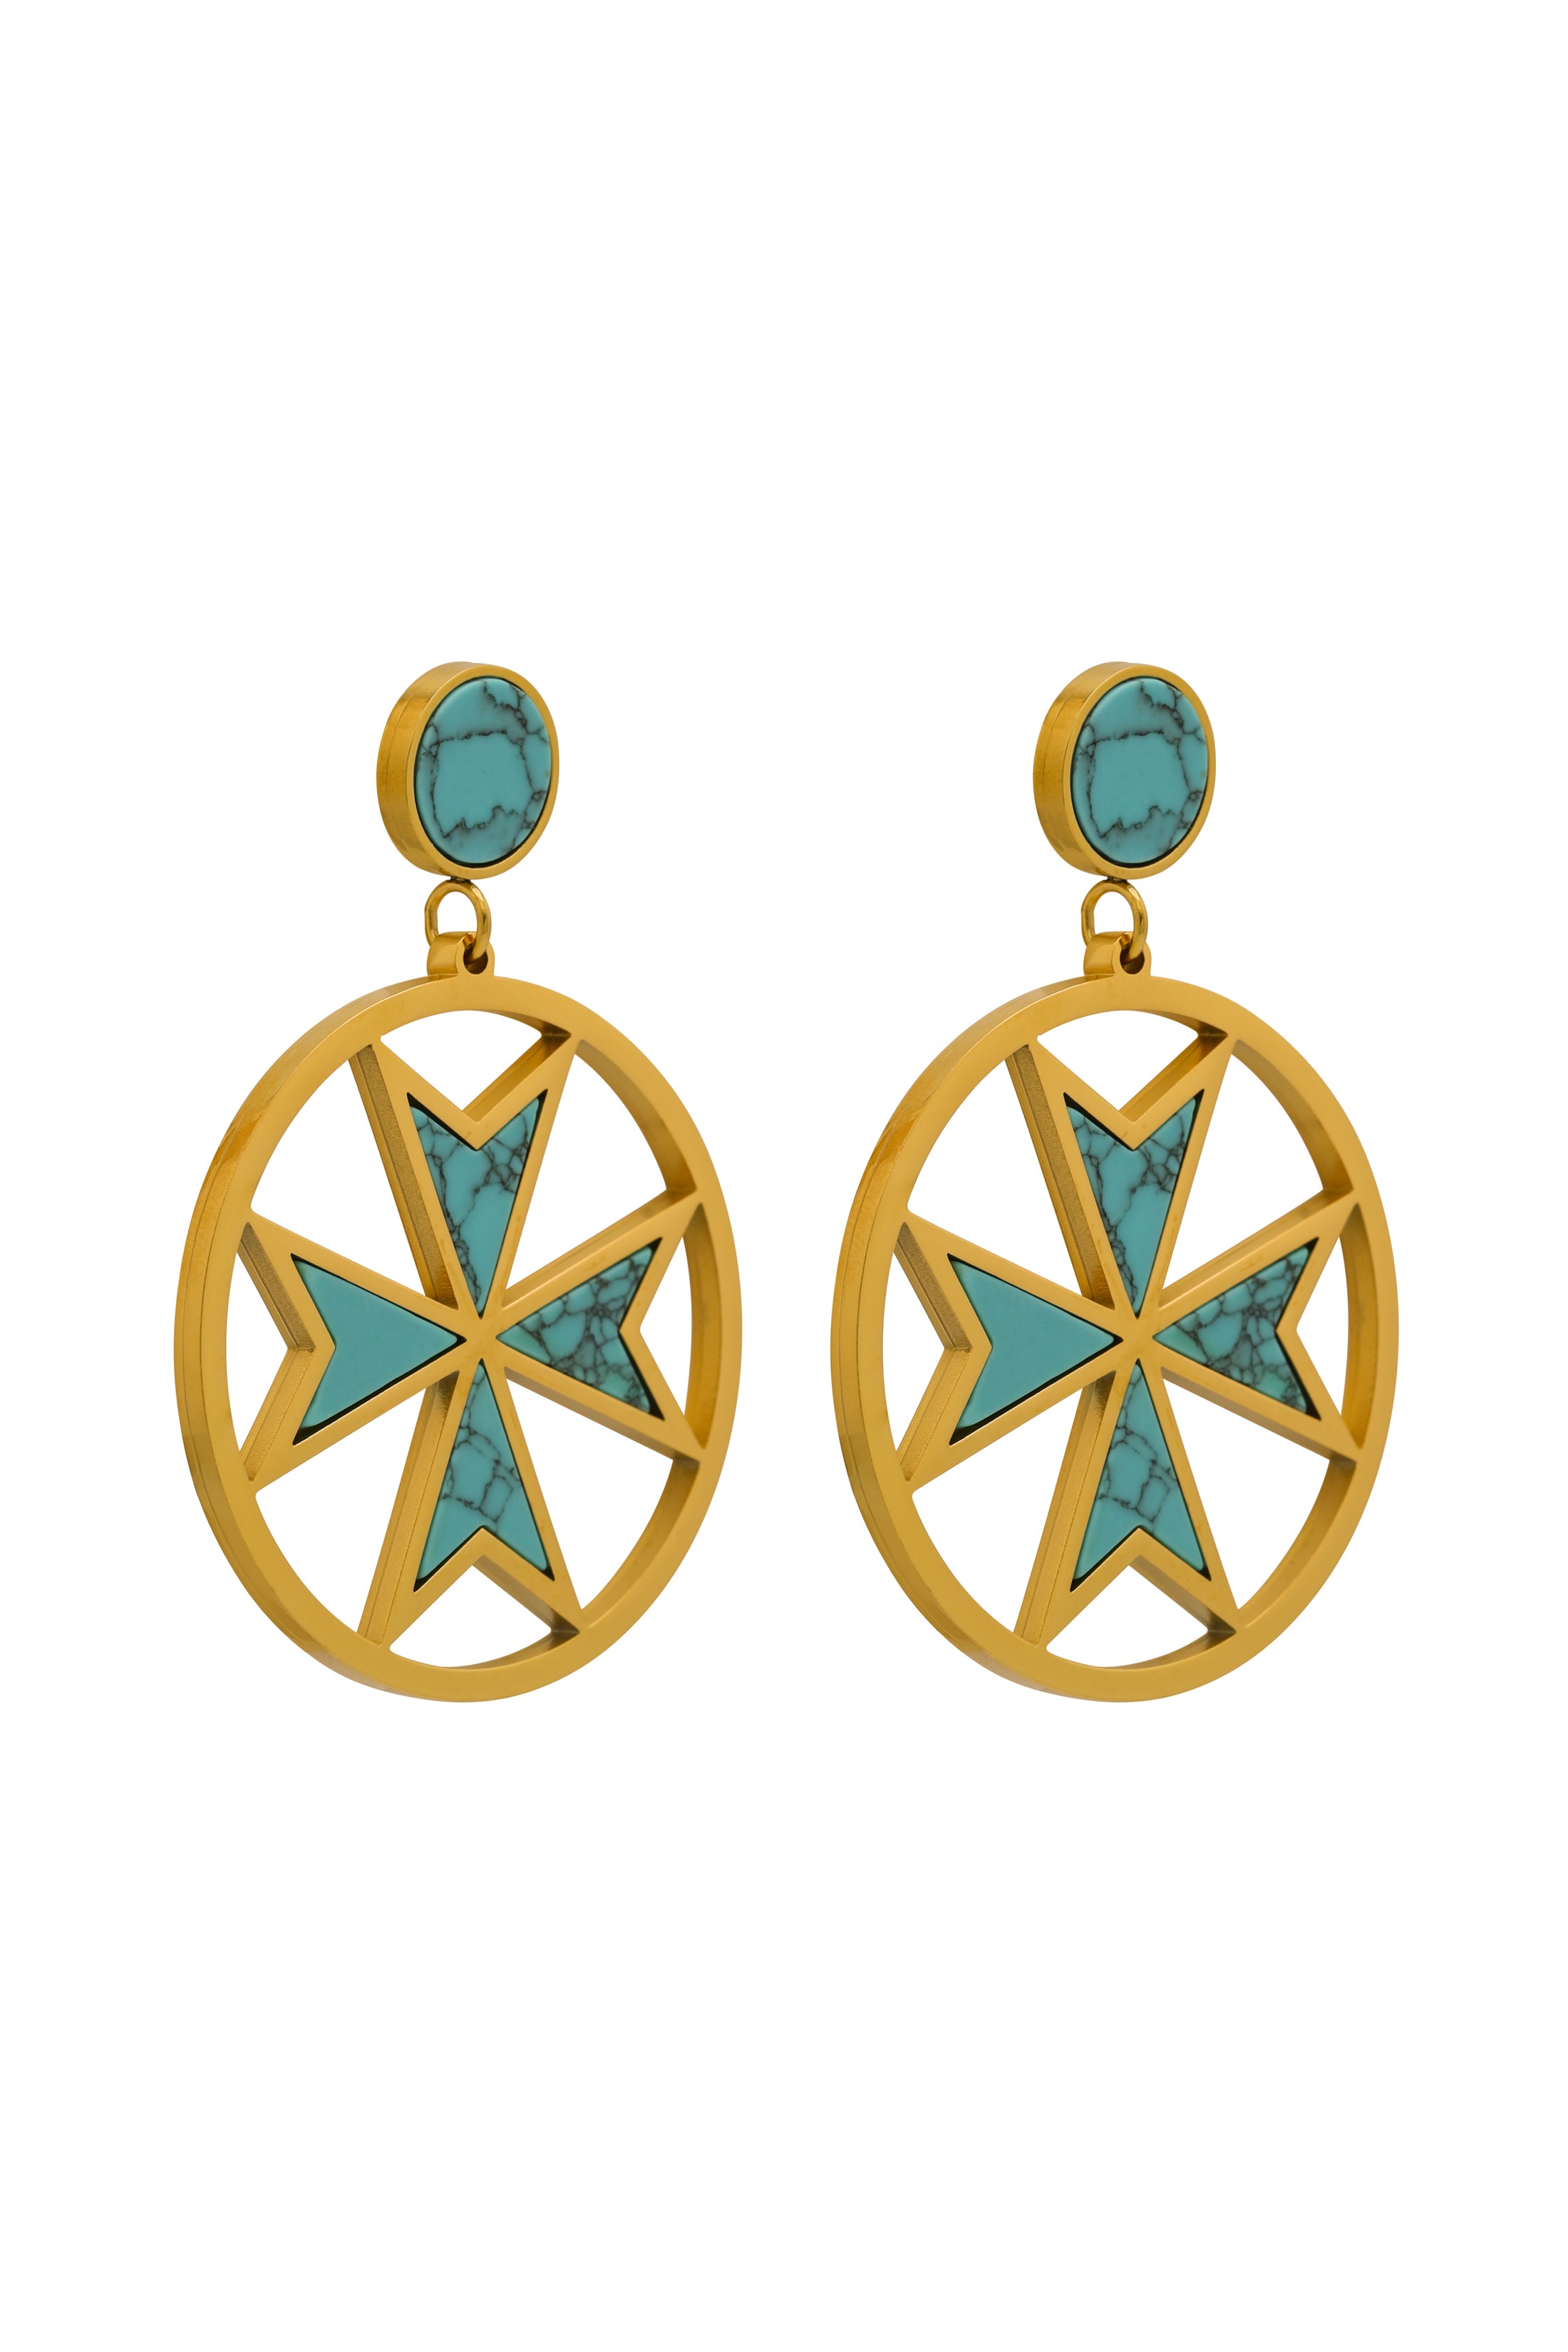 The Turquoise Maltese Cross Earring Set